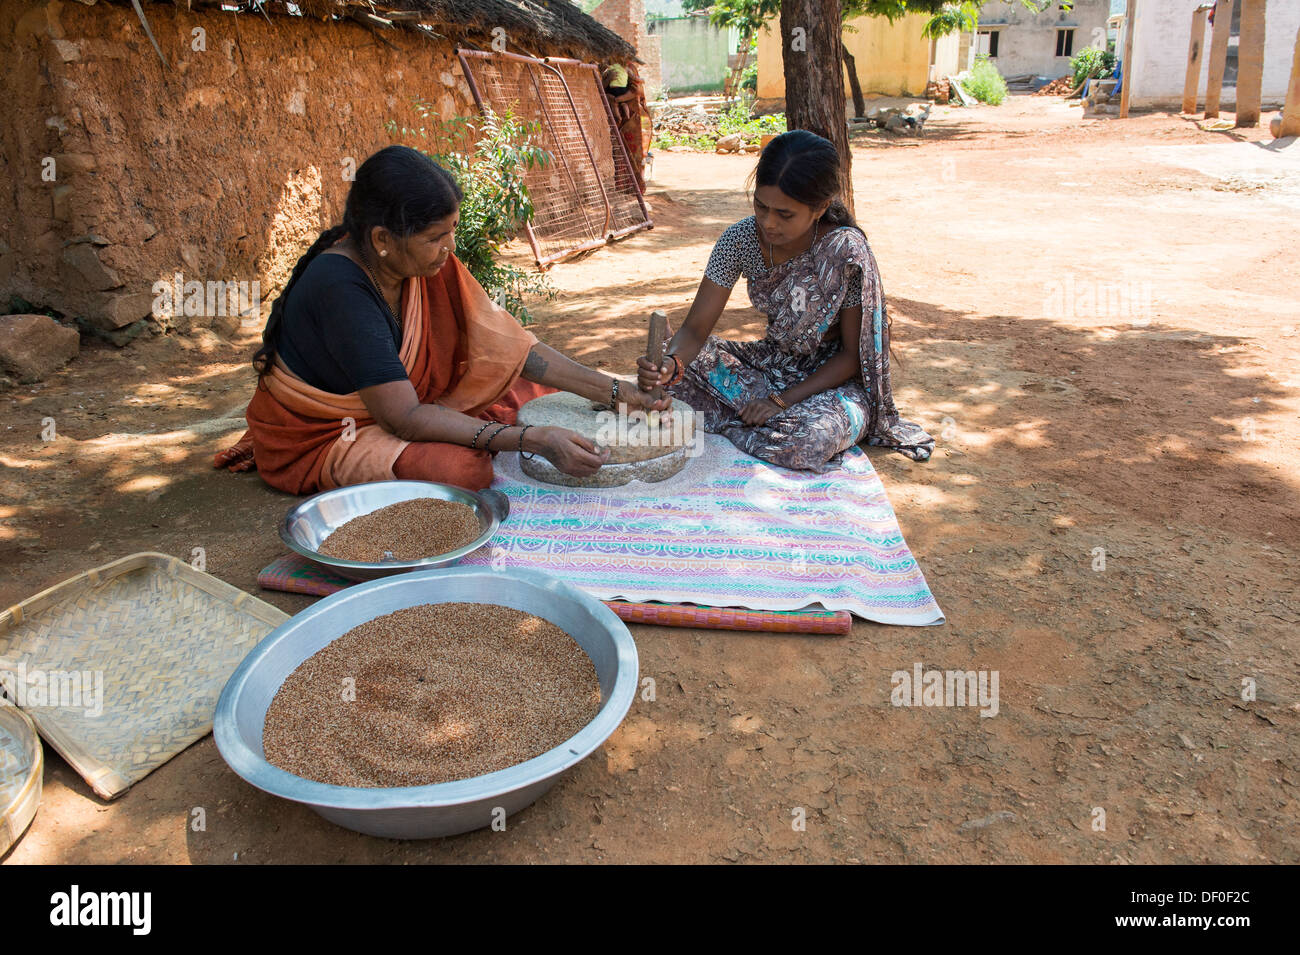 Ländliche Indianerdorf Frauen mit Mahlsteinen Steinen Fingerhirse Samen mahlen / Ragi-Hirse Samen zu Ragi-Hirse-Mehl. Andhra Pradesh. Indien Stockfoto